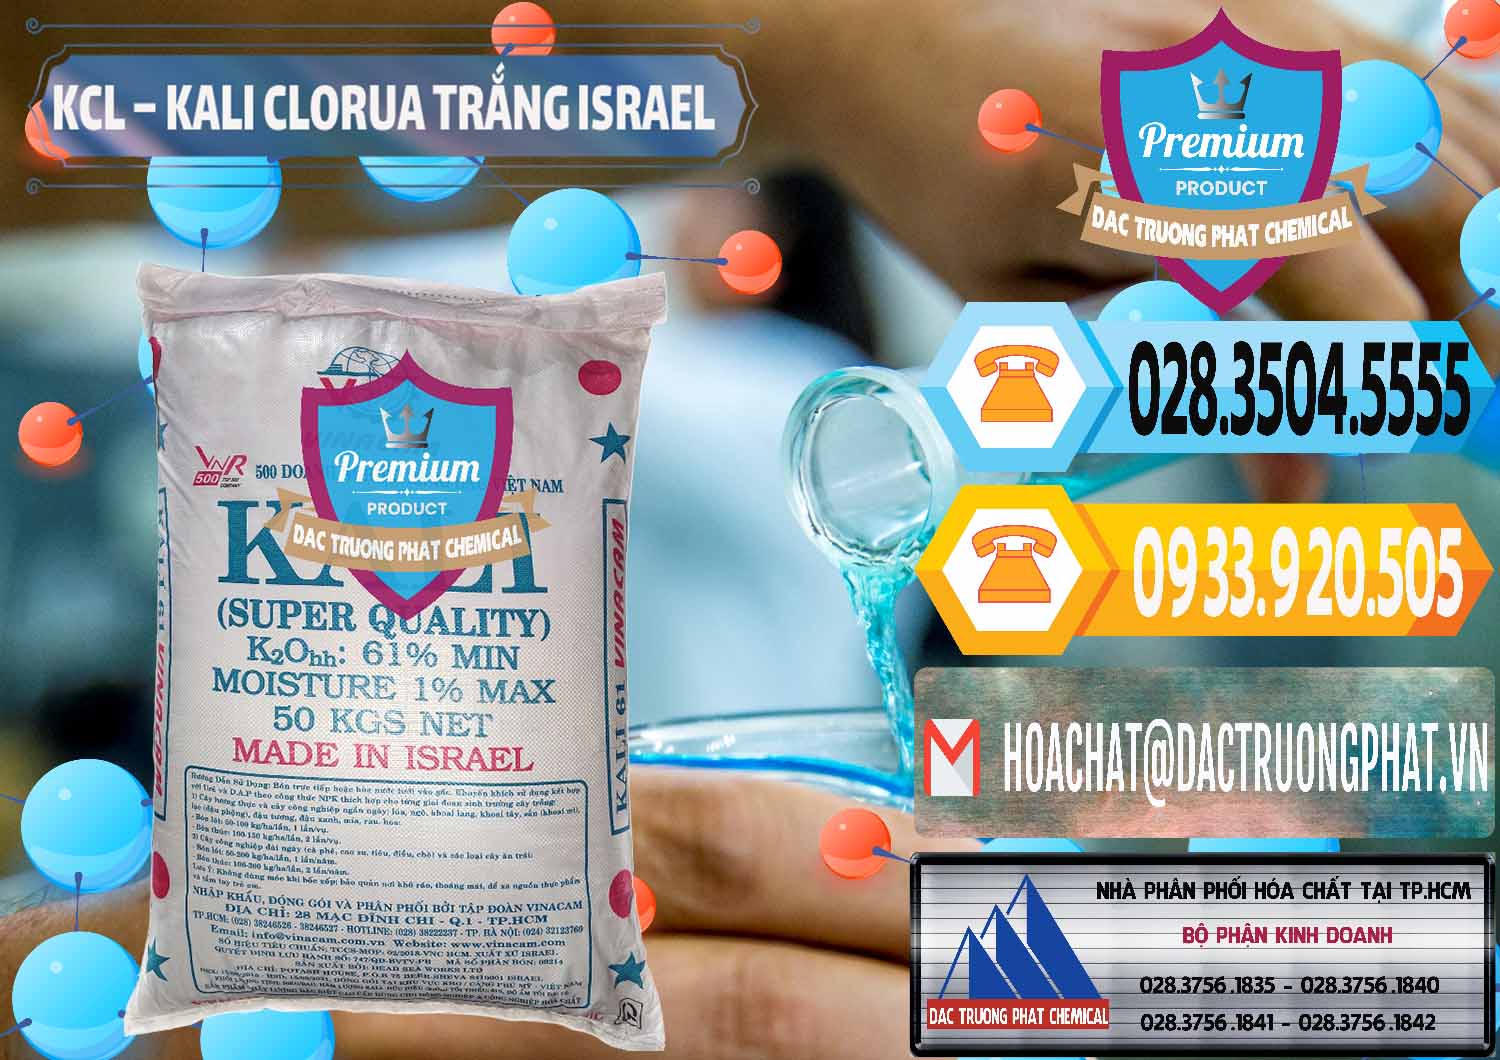 Nơi bán - phân phối KCL – Kali Clorua Trắng Israel - 0087 - Đơn vị kinh doanh và phân phối hóa chất tại TP.HCM - hoachattayrua.net